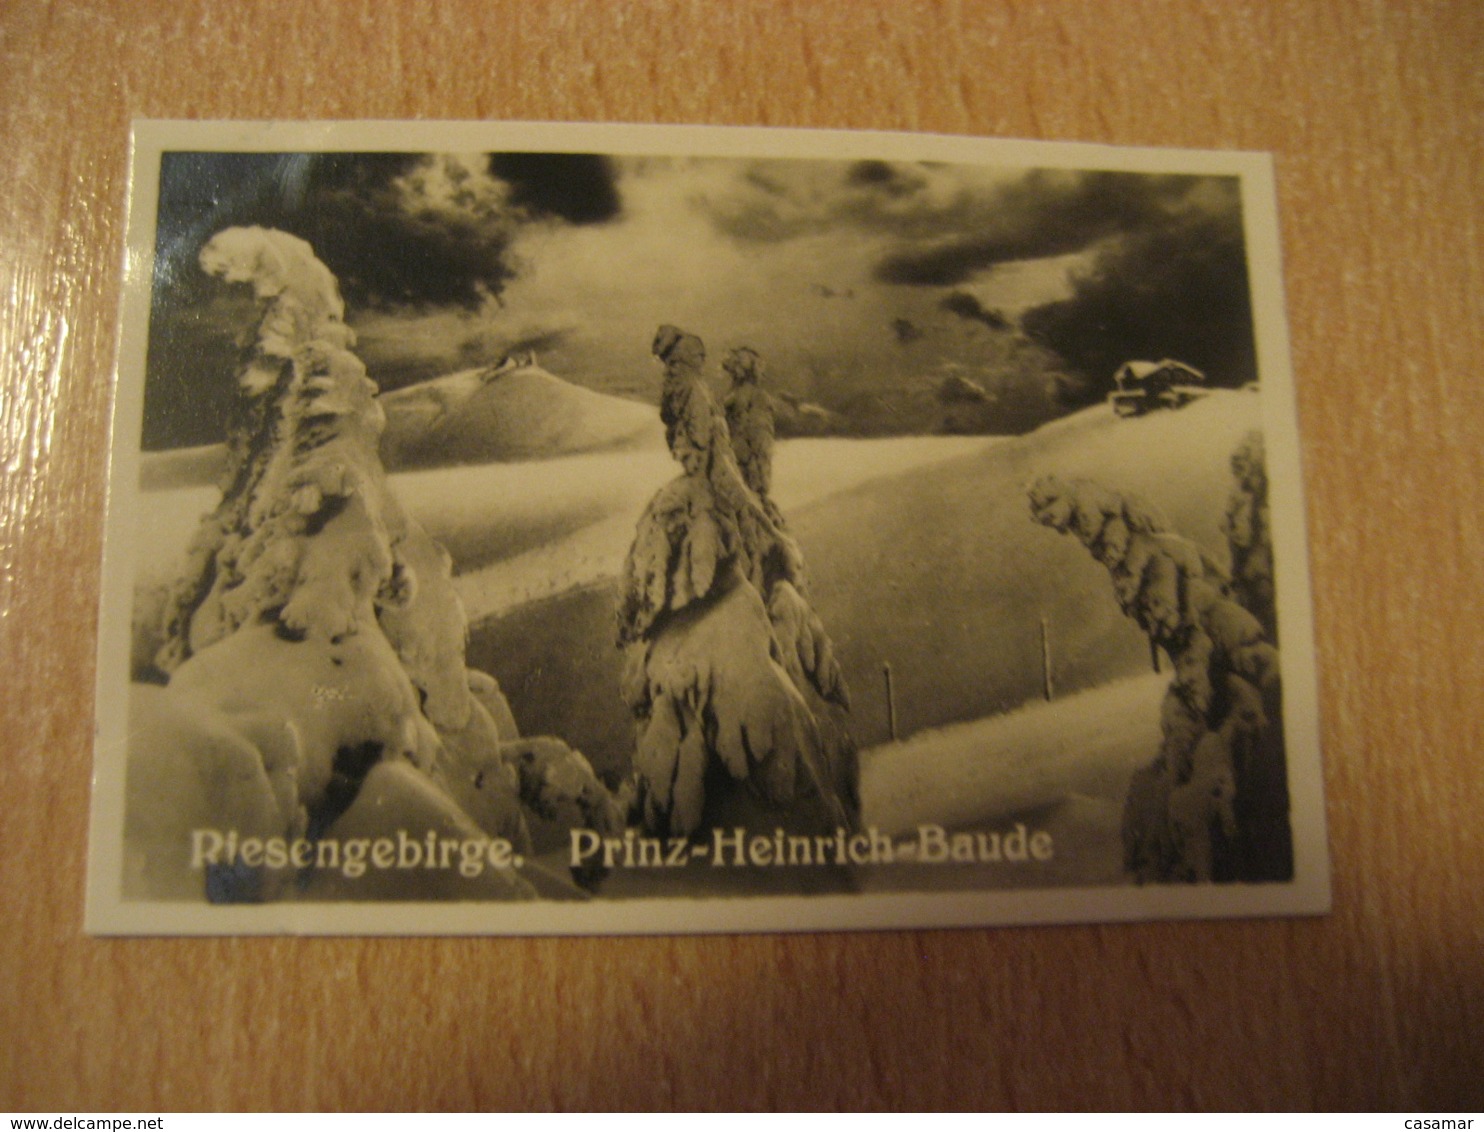 RIESENGEBIRGE Prinz-Heinrich-Baude Schneekoppe Bilder Card Photo Photography (4,3x6,3cm) GERMANY 30s Tobacco - Ohne Zuordnung